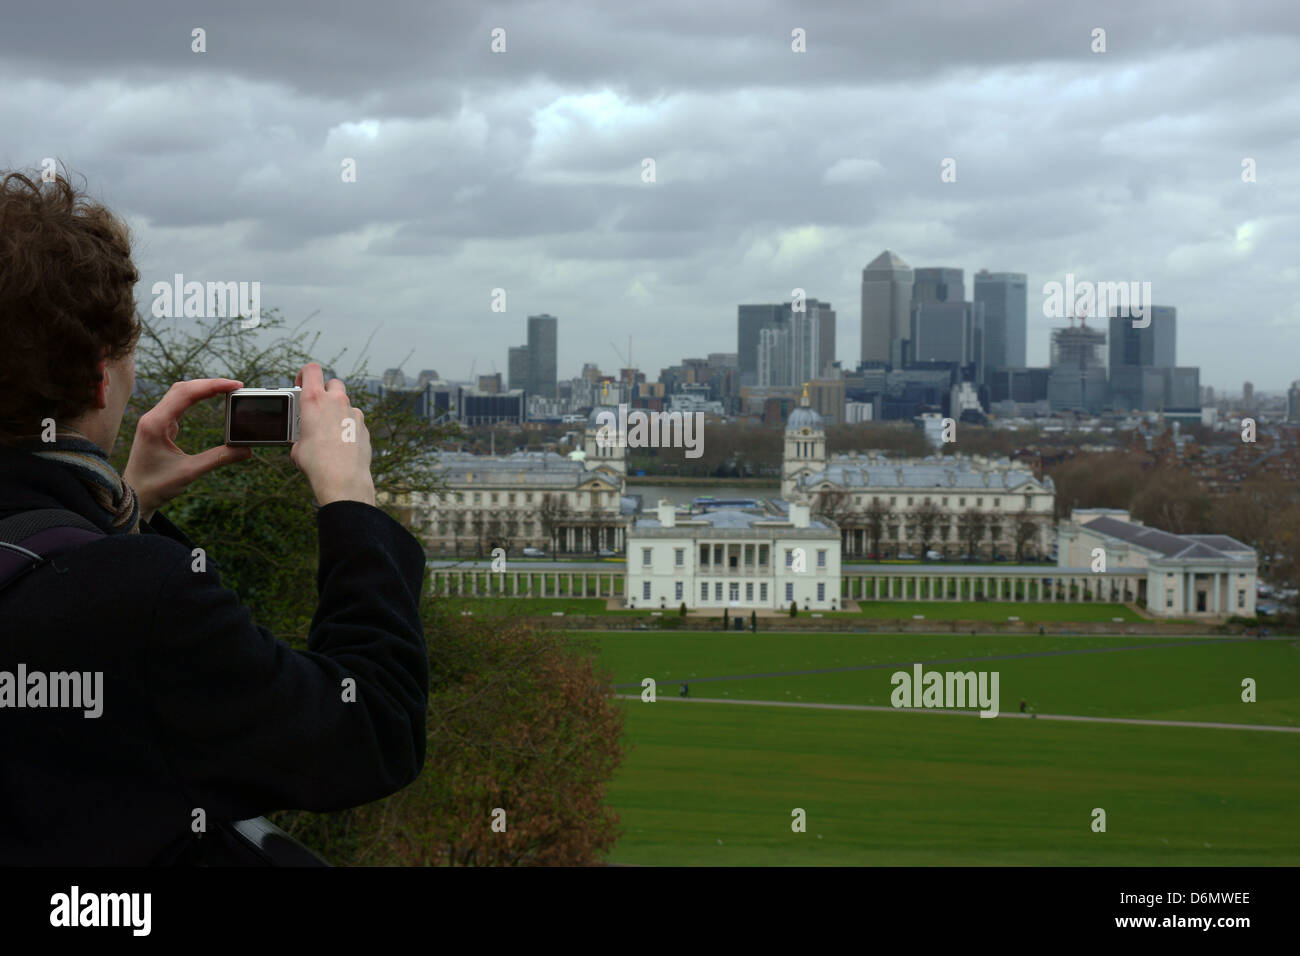 Telefono con fotocamera london canary wharf fotografie nuvoloso calma giorno uomo prendendo le foto sulla fotocamera Foto Stock